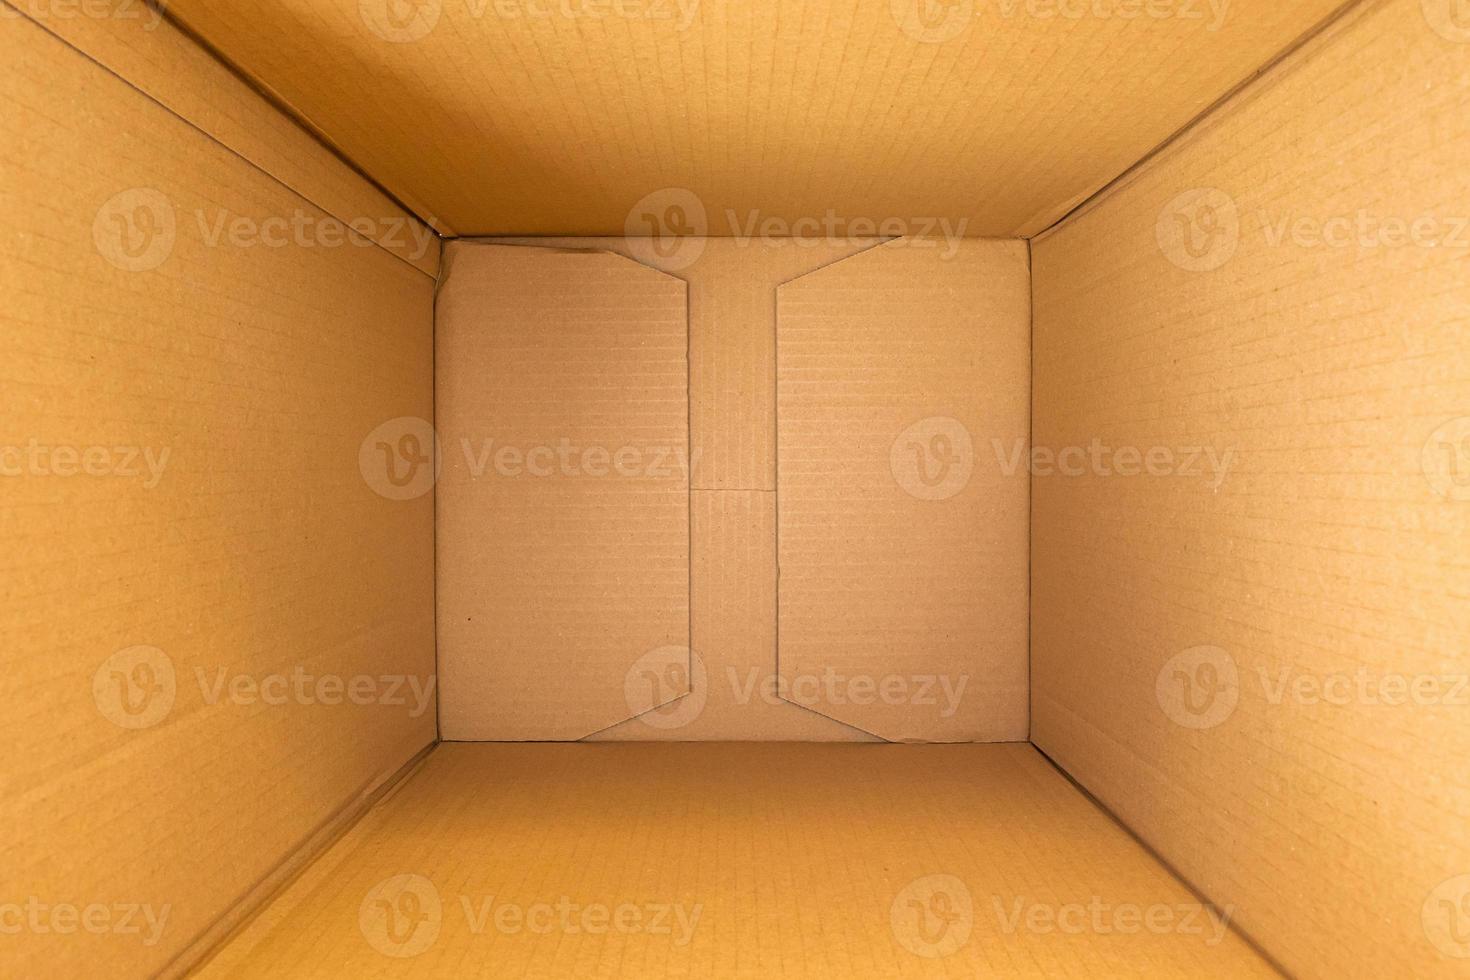 vista superior de fondo de caja de cartón marrón vacía abierta foto